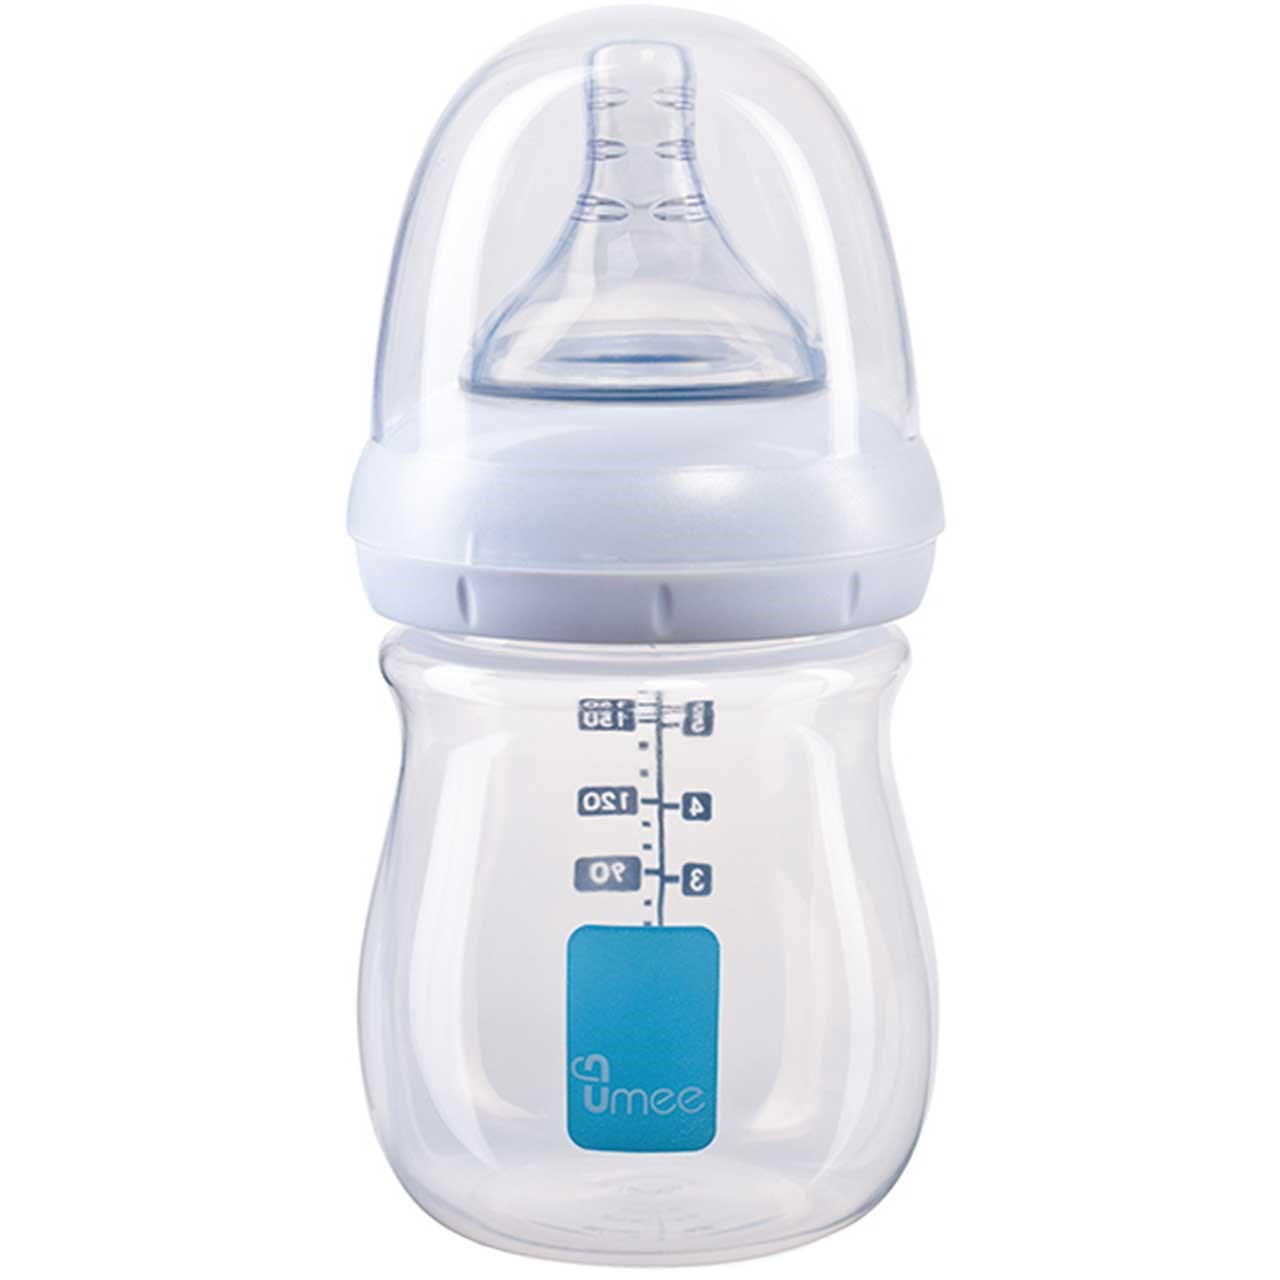 شیشه شیر یومیی مدل N100001-T ظرفیت 160 میلی لیتر